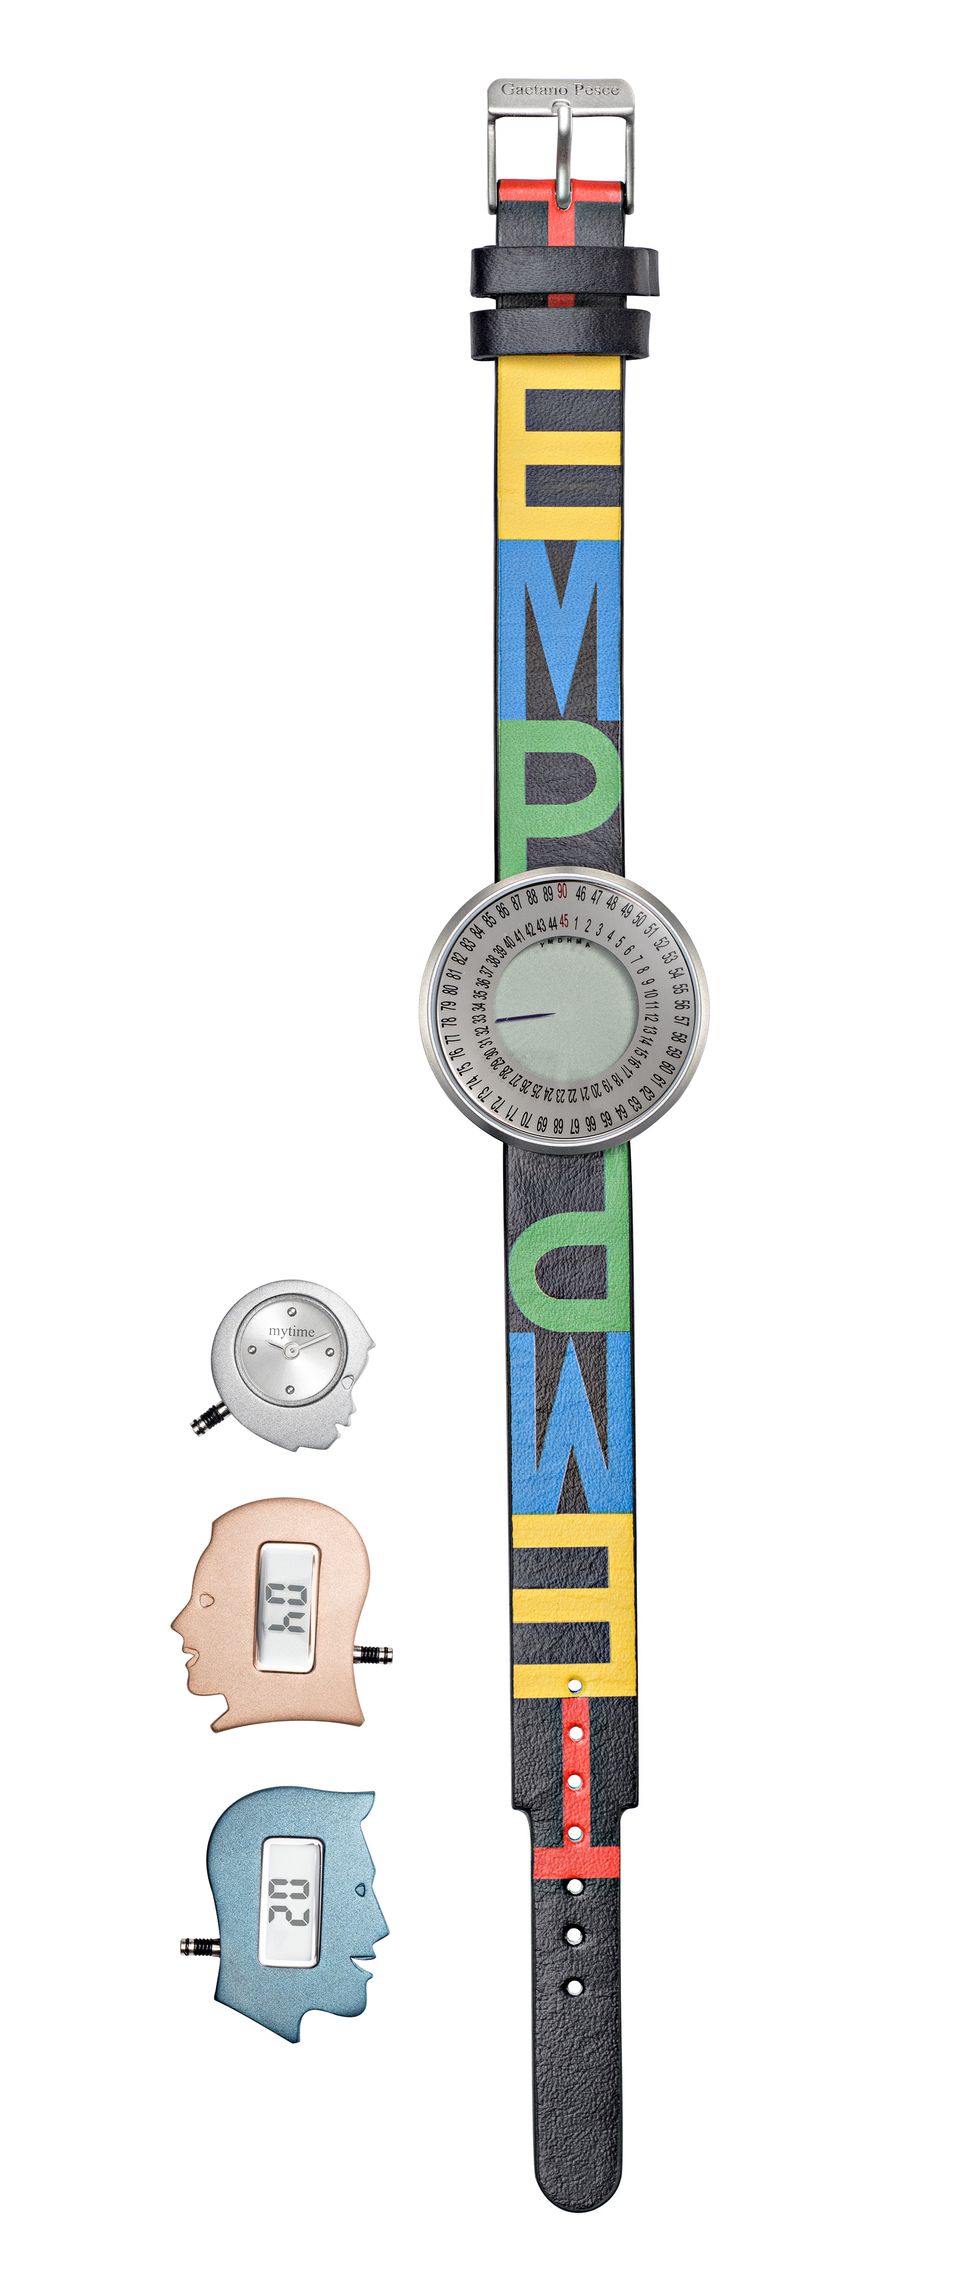 L'orologio My Time creato da Gaetano Pesce per Morellato.